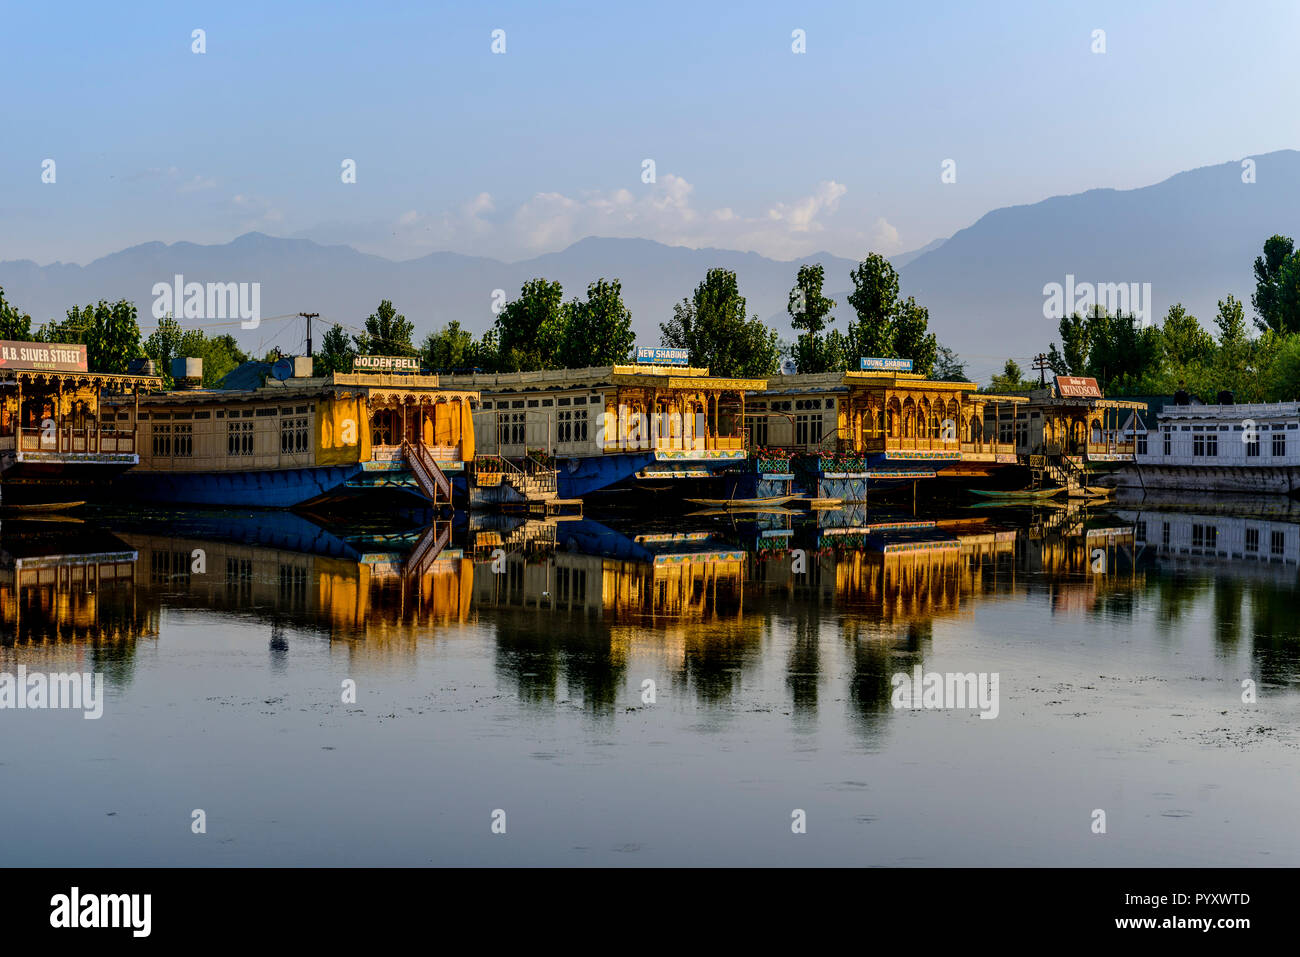 Hausboote zum Mieten, am Dal Lake verankert und Spiegelungen im Wasser, sind die Hauptattraktion für Touristen Kaschmir Besuch Stockfoto